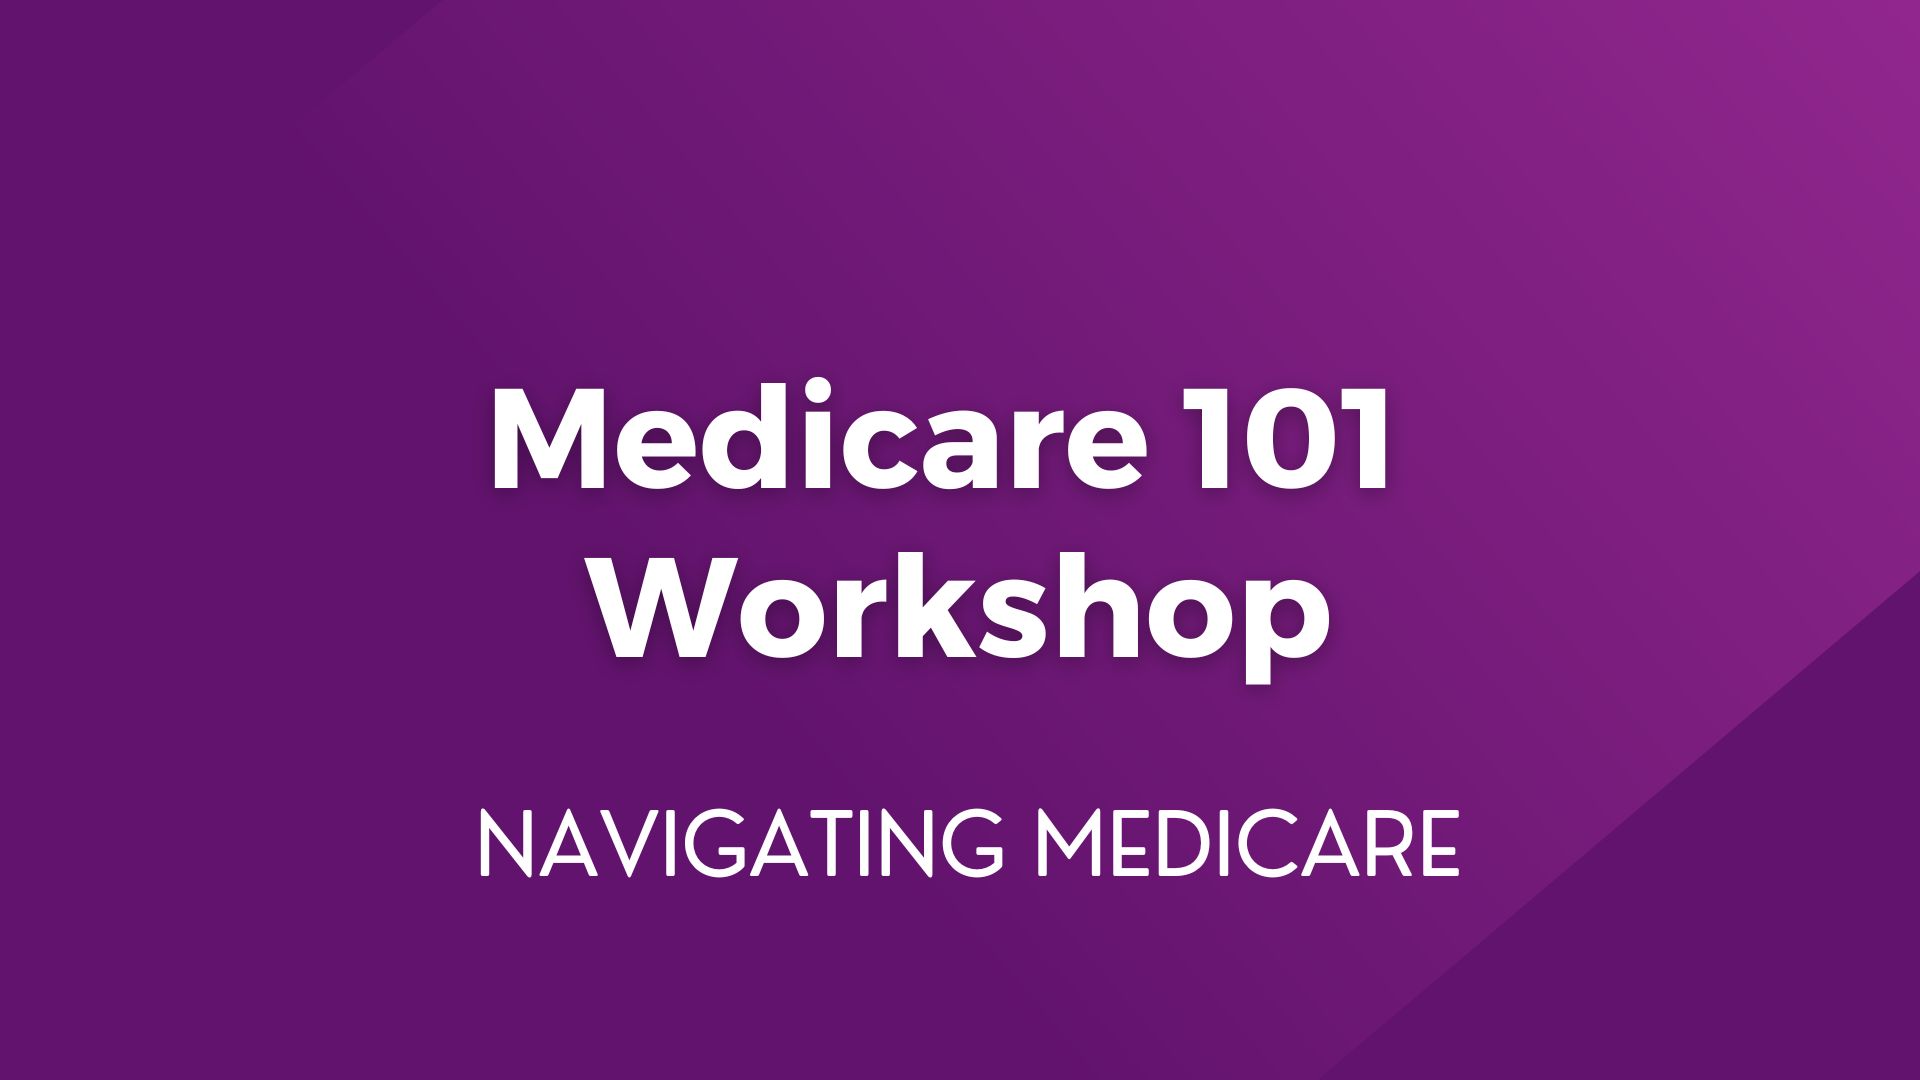 Medicare 101 Workshop – February 15